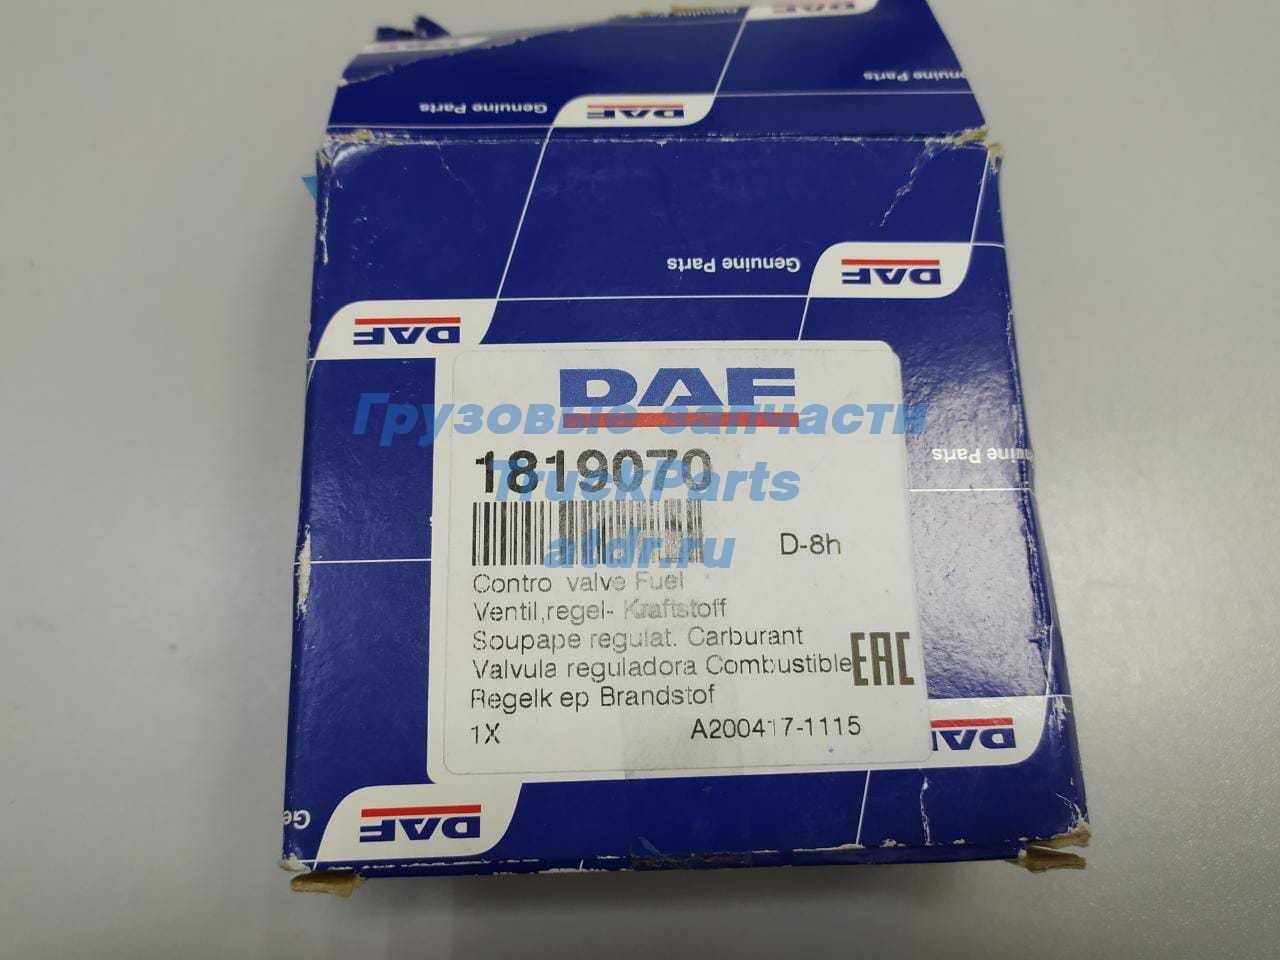 Клапан контрольный DAF XF105 топливной системы DAF 1819070